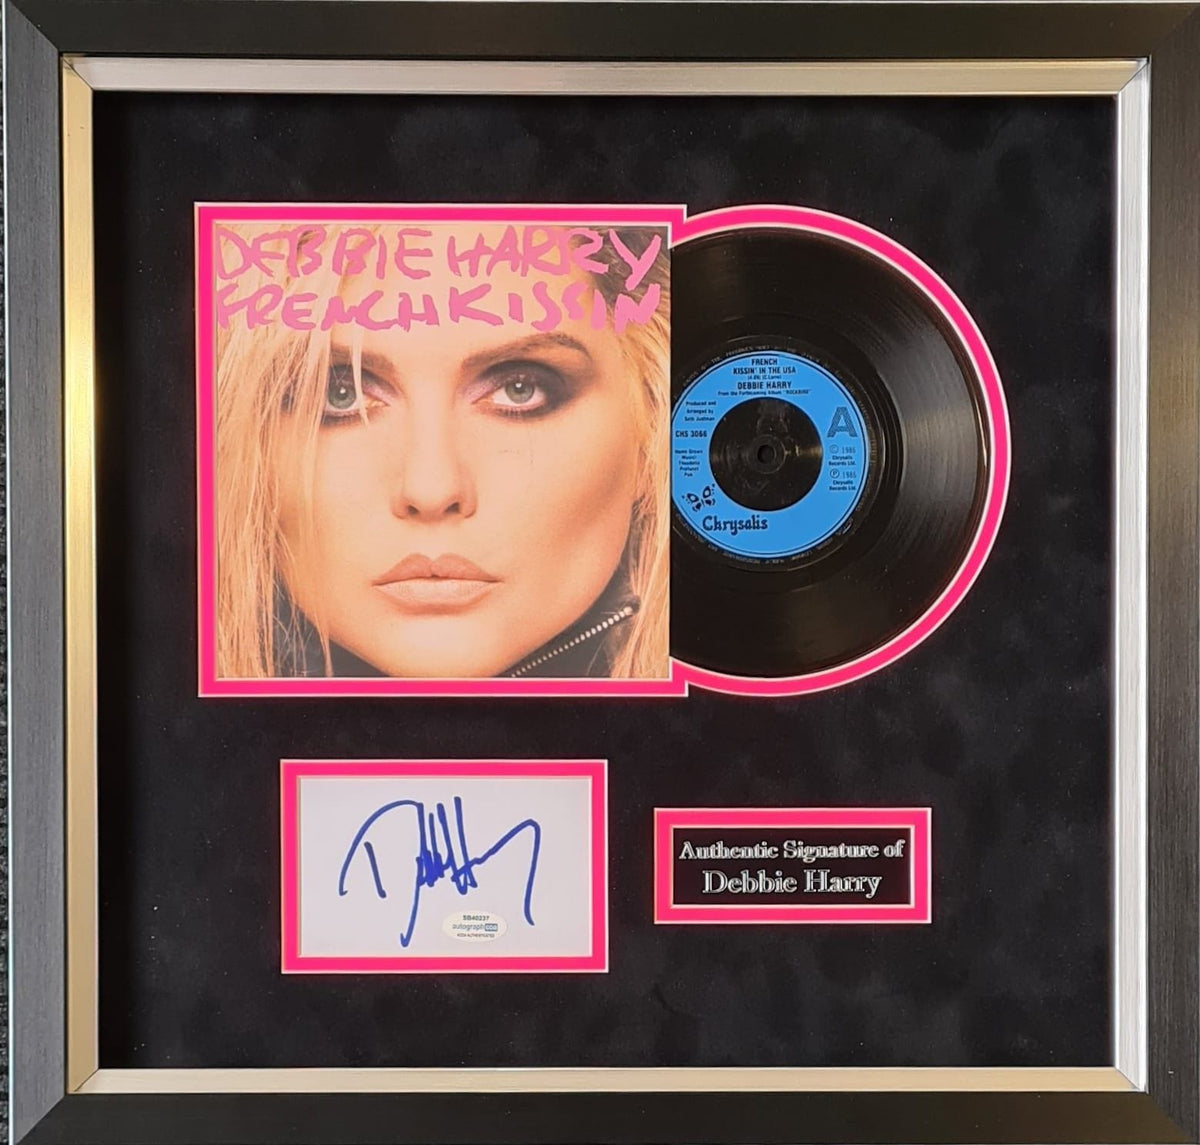 Debbie Harry Signed & Framed 7" Vinyl Display